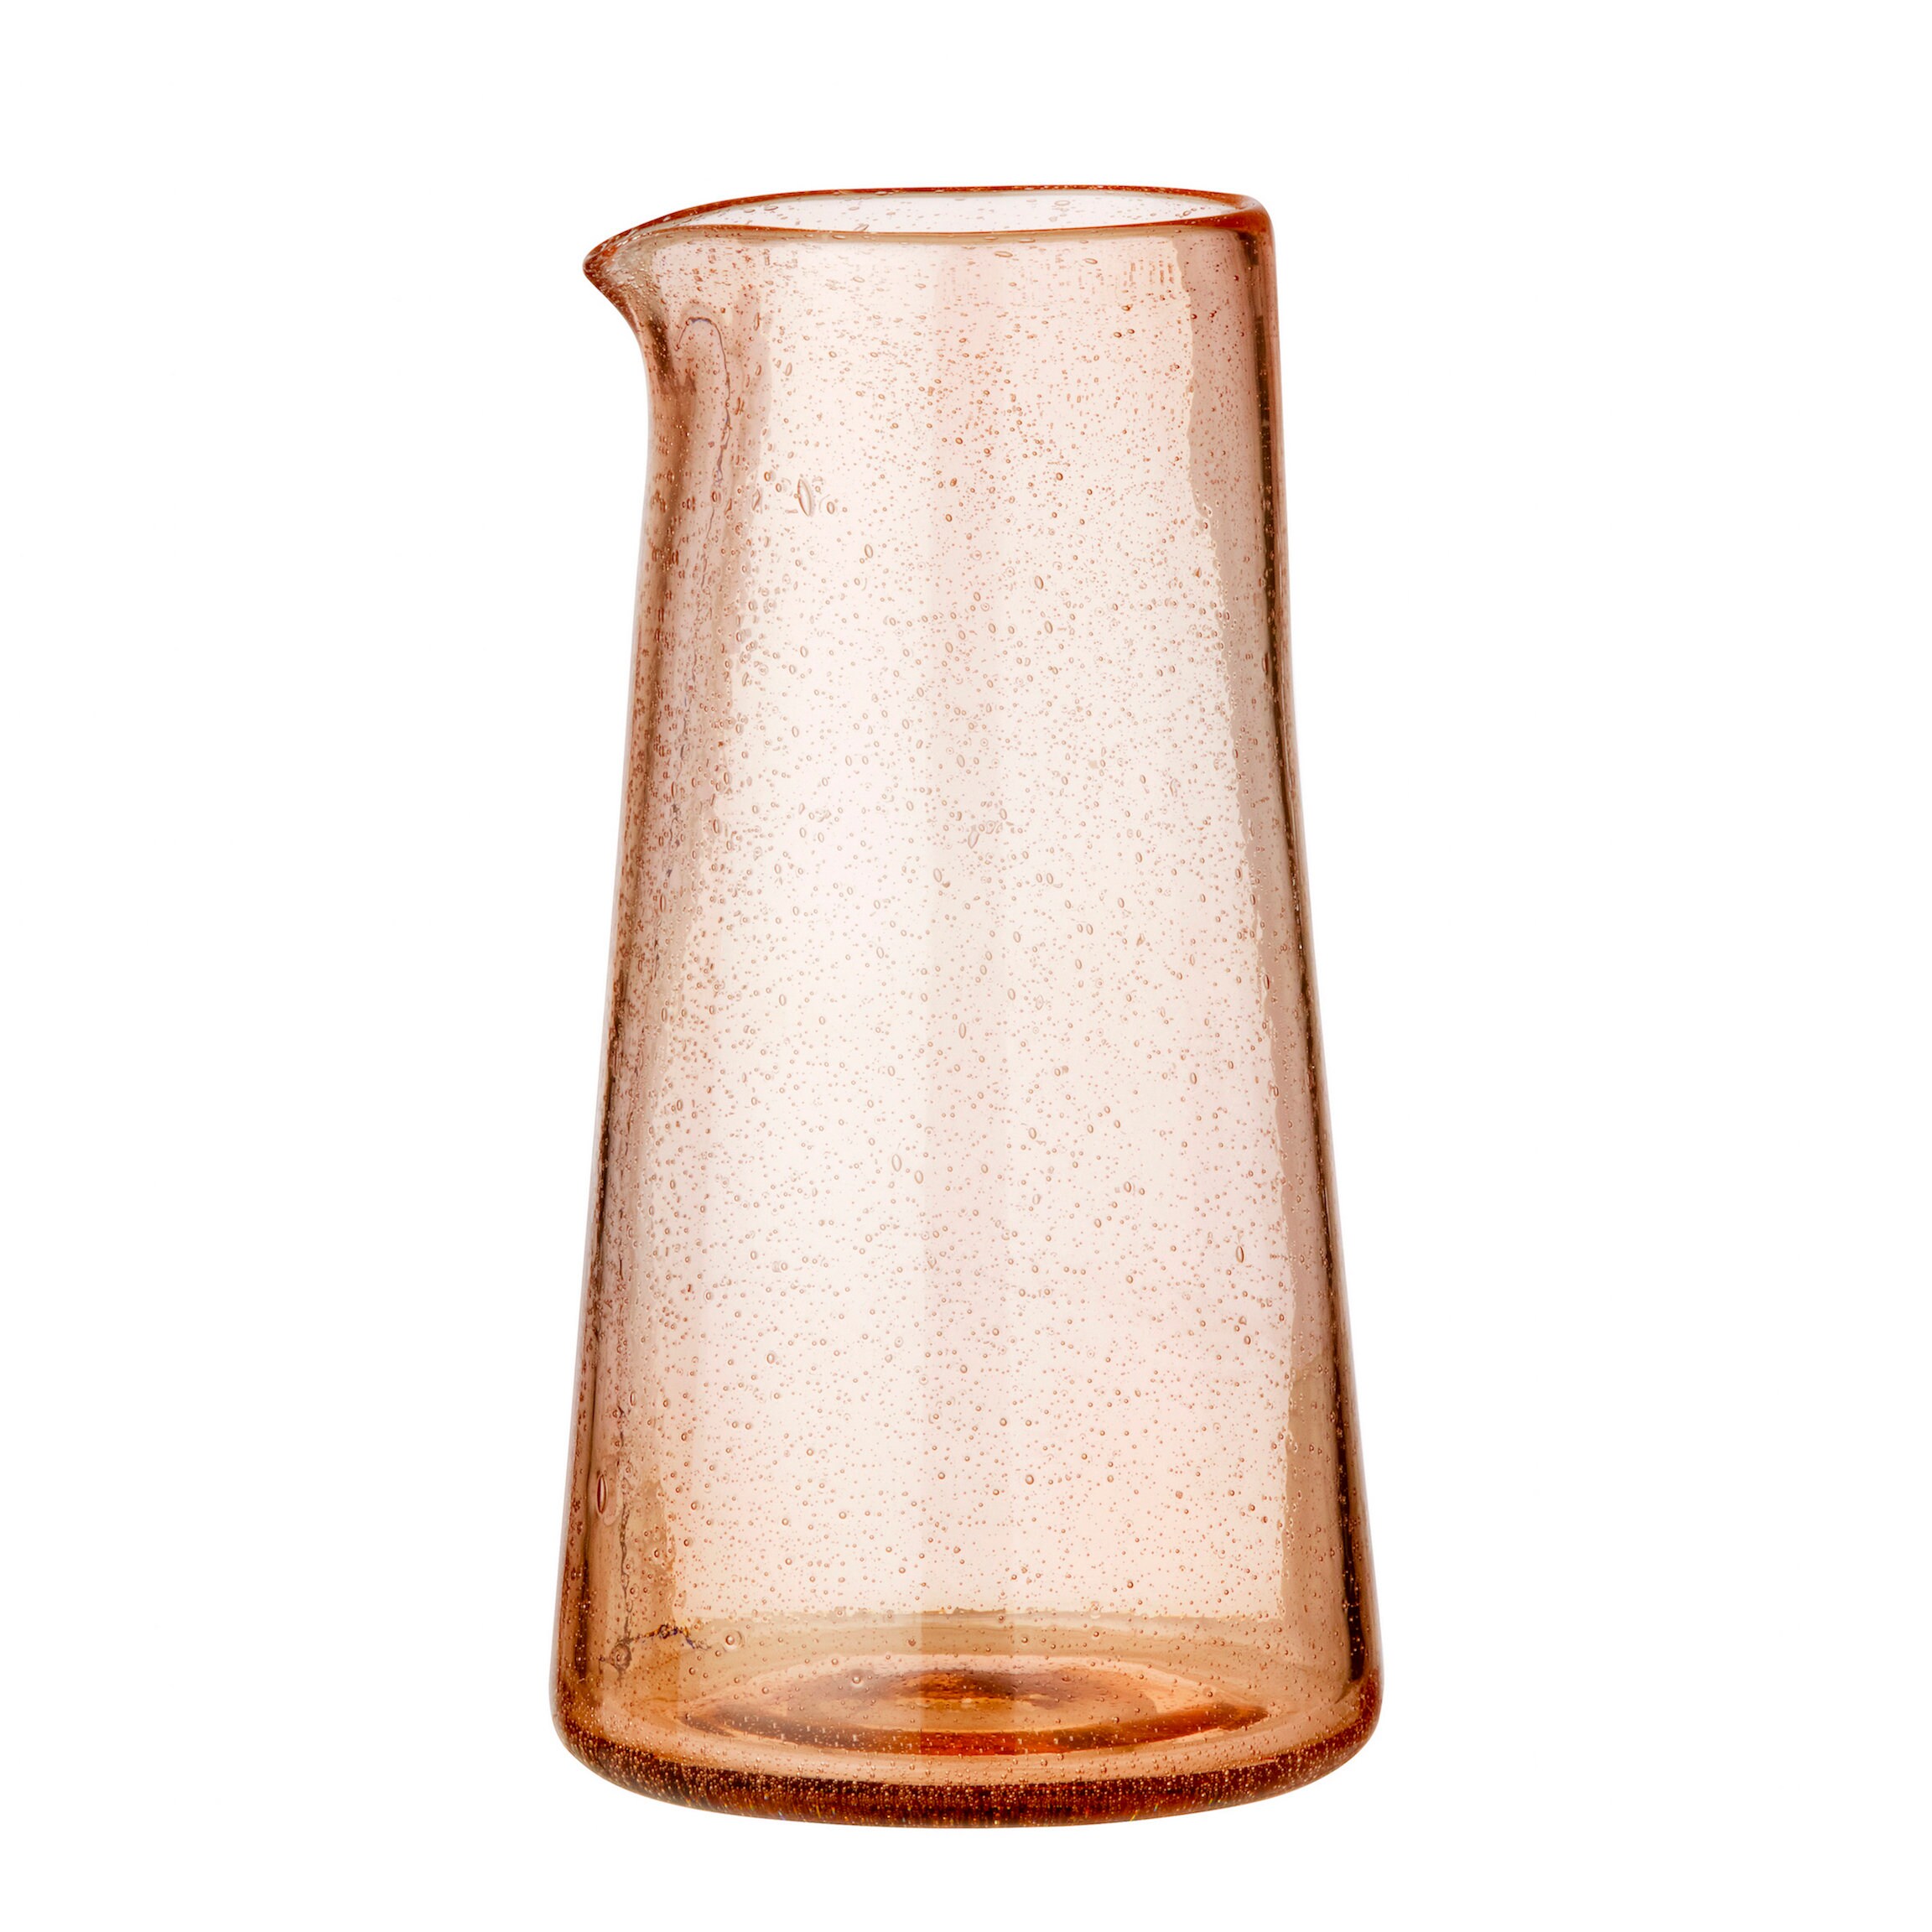 Melon-Coloured Glass Jug Vase 20cm/Vase Pichet en Verre Soufflé Couleur Melon 20cm